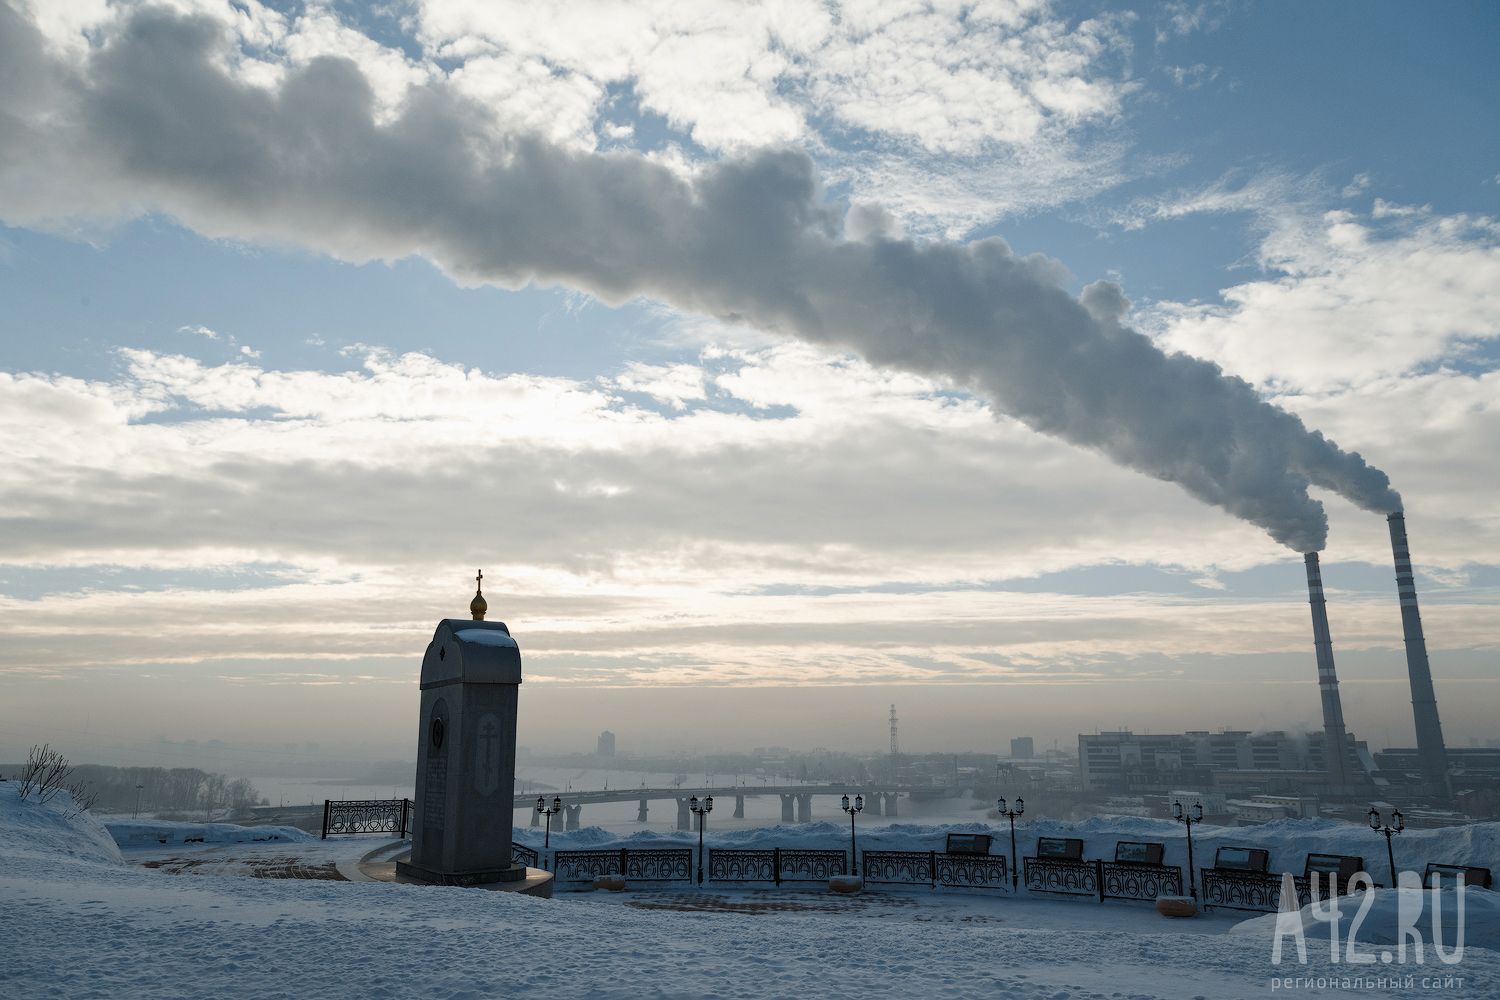 СГК: в Кемерове электростанции увеличили температуру теплоносителя из-за морозов